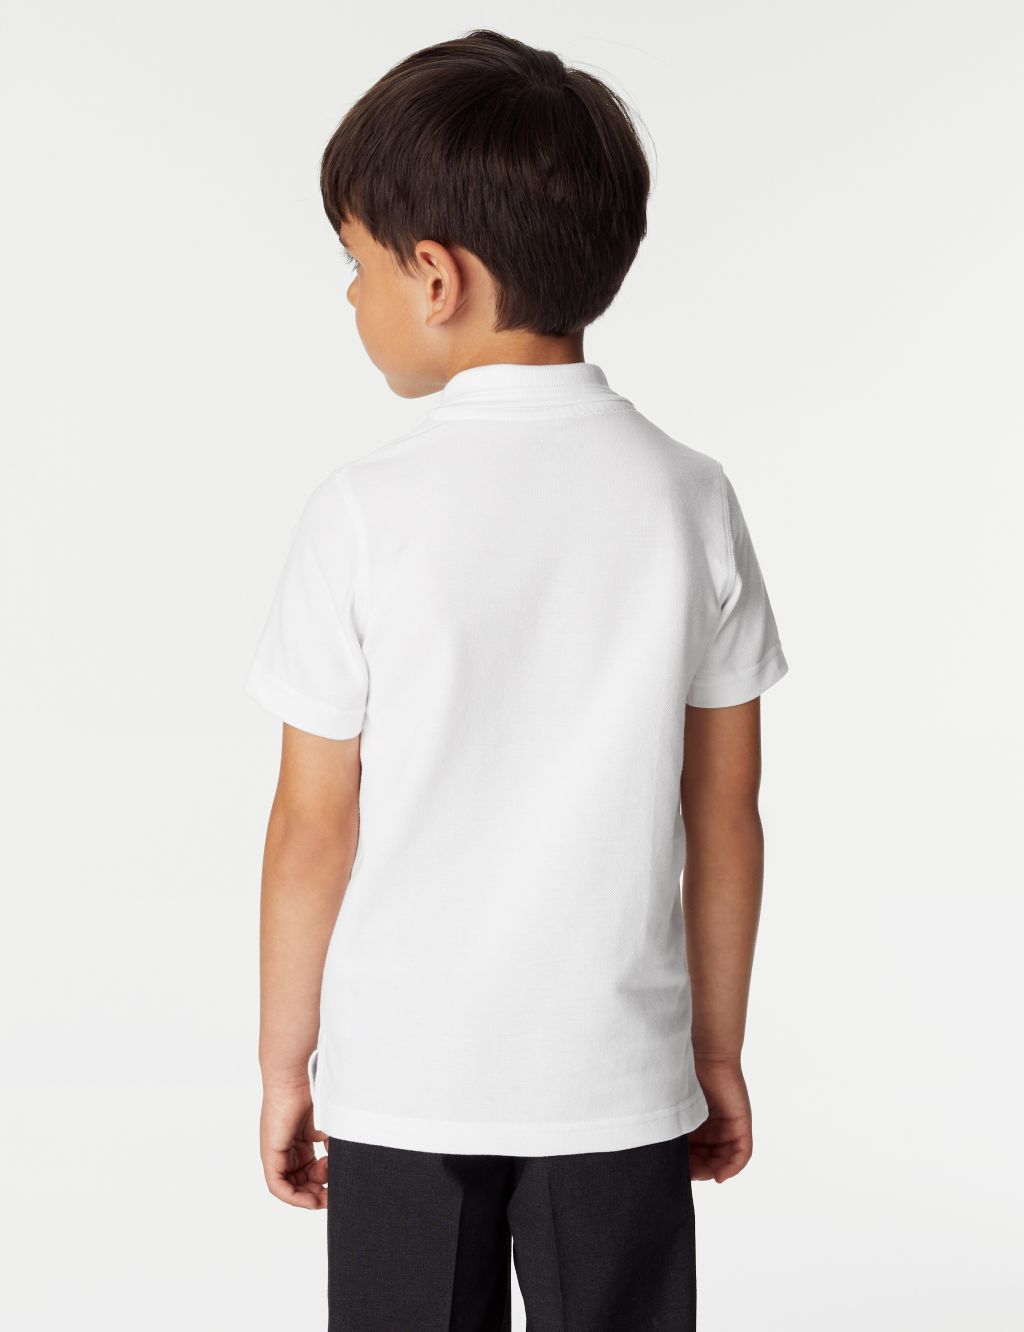 2pk Boys' Slim Fit School Polo Shirts (2-16 Yrs) image 3